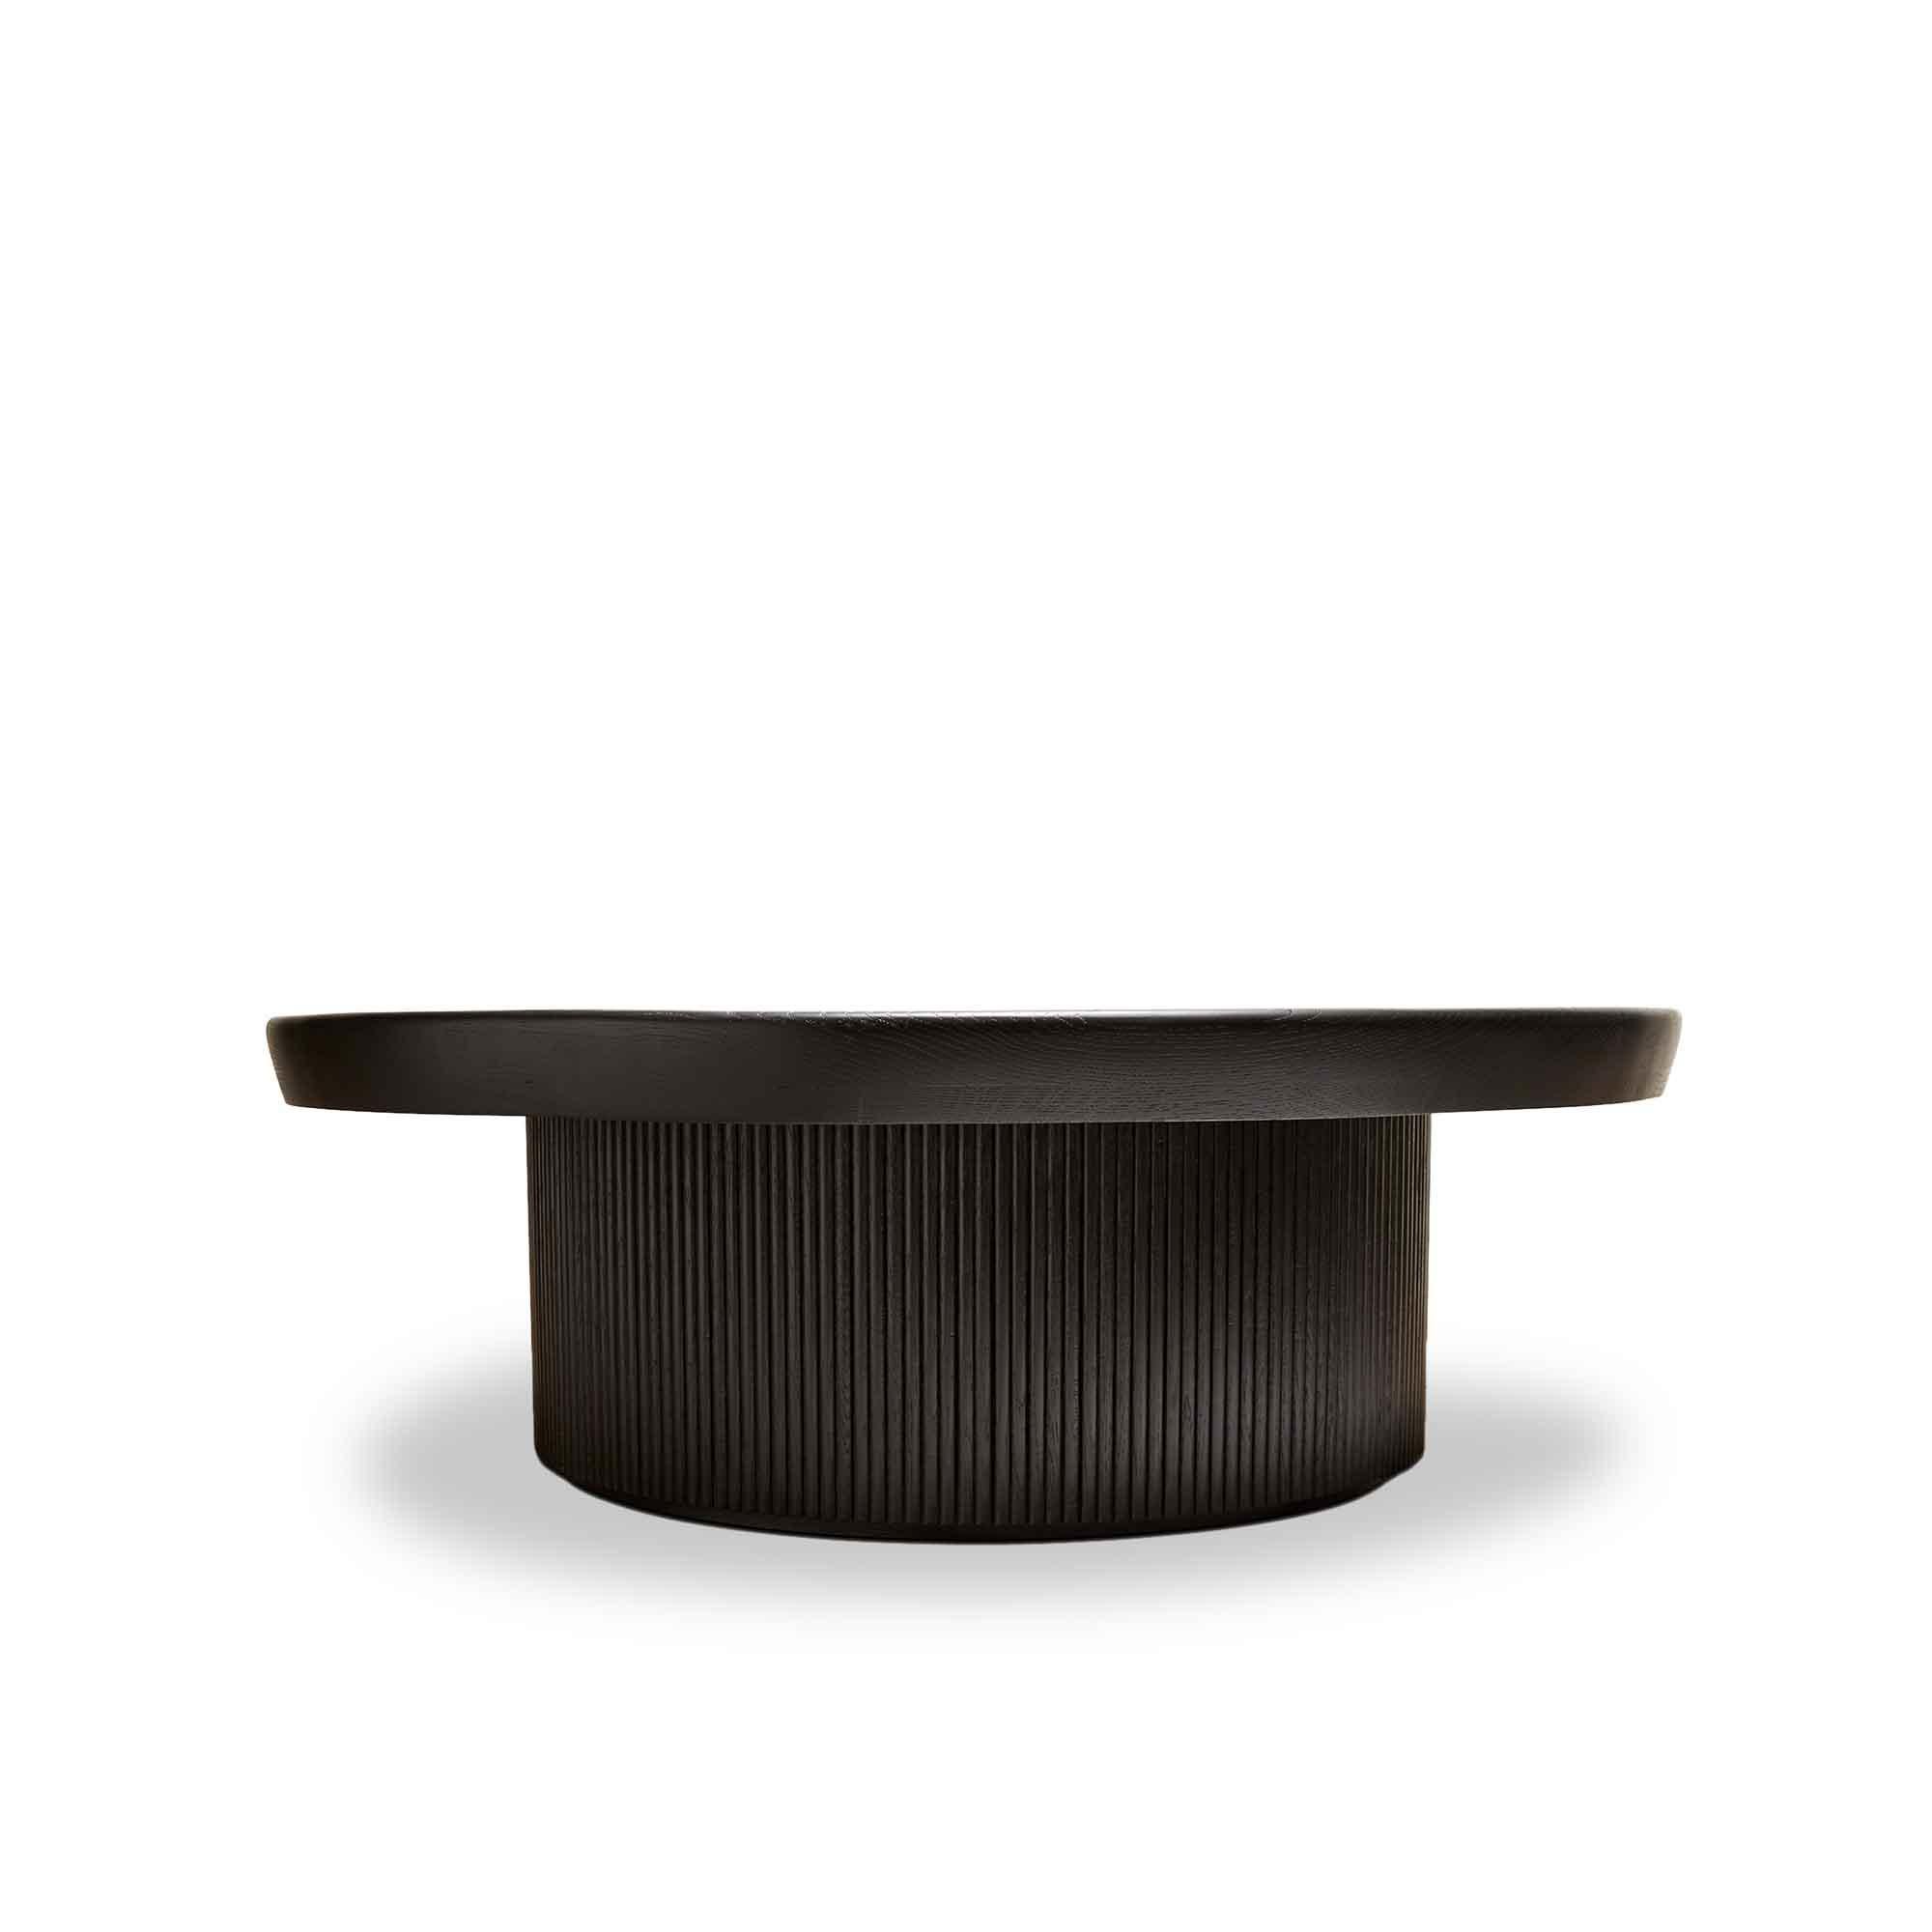 Table basse Ojai en chêne ébonisé par Lawson-Fenning. La table basse Ojai présente un plateau rond avec marqueterie et une base en forme de tambour avec des détails de tambour. Disponible en noyer américain ou en chêne blanc. 

La collection